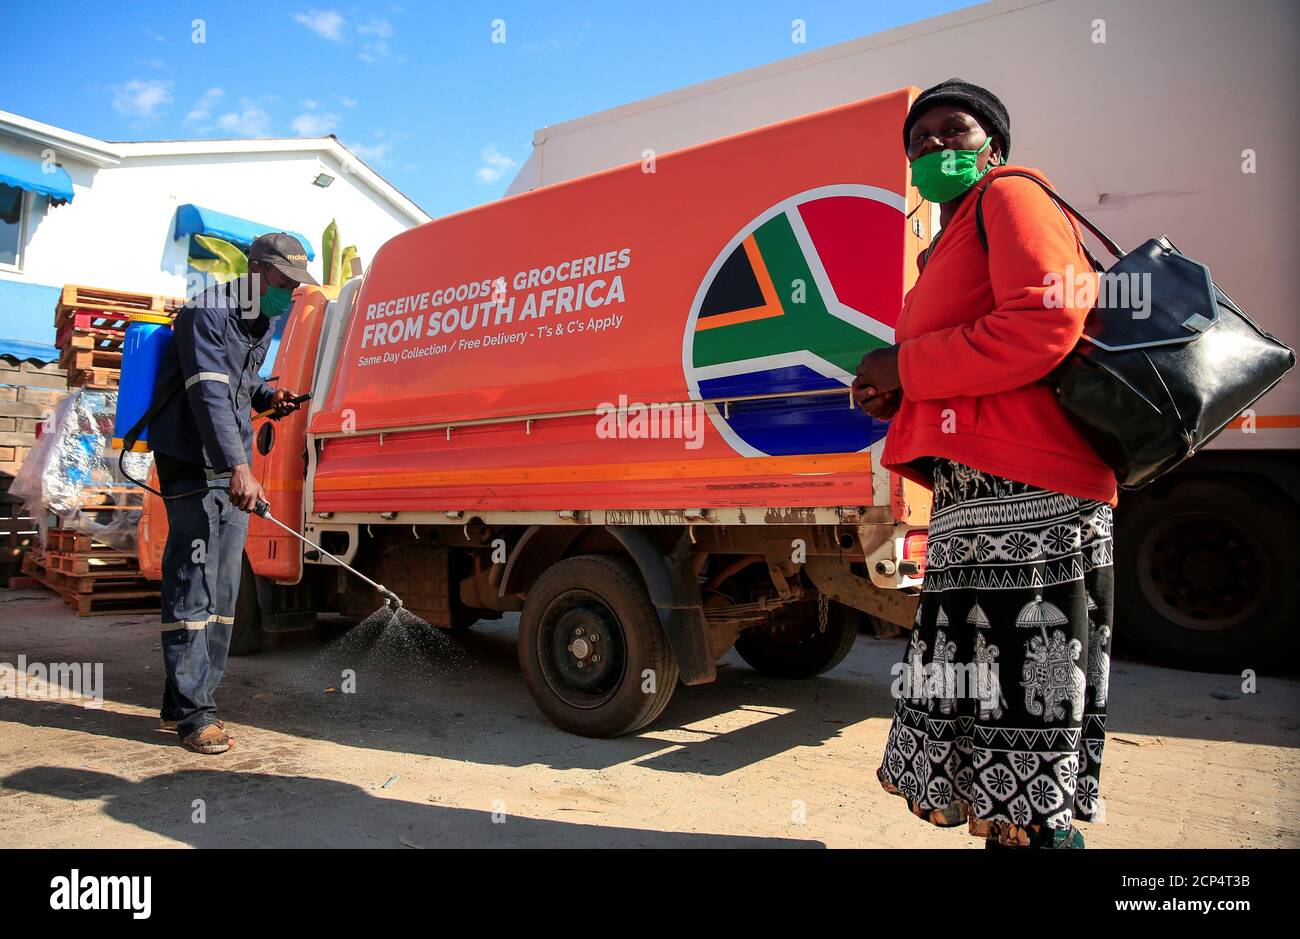 Una donna arriva a raccogliere generi alimentari da un magazzino Malaicha durante un blocco nazionale per contribuire a frenare la diffusione della malattia del coronavirus (COVID-19) a Harare, Zimbabwe, 15 maggio 2020. Foto scattata il 15 maggio 2020. REUTERS/Philimon Bulawayo Foto Stock